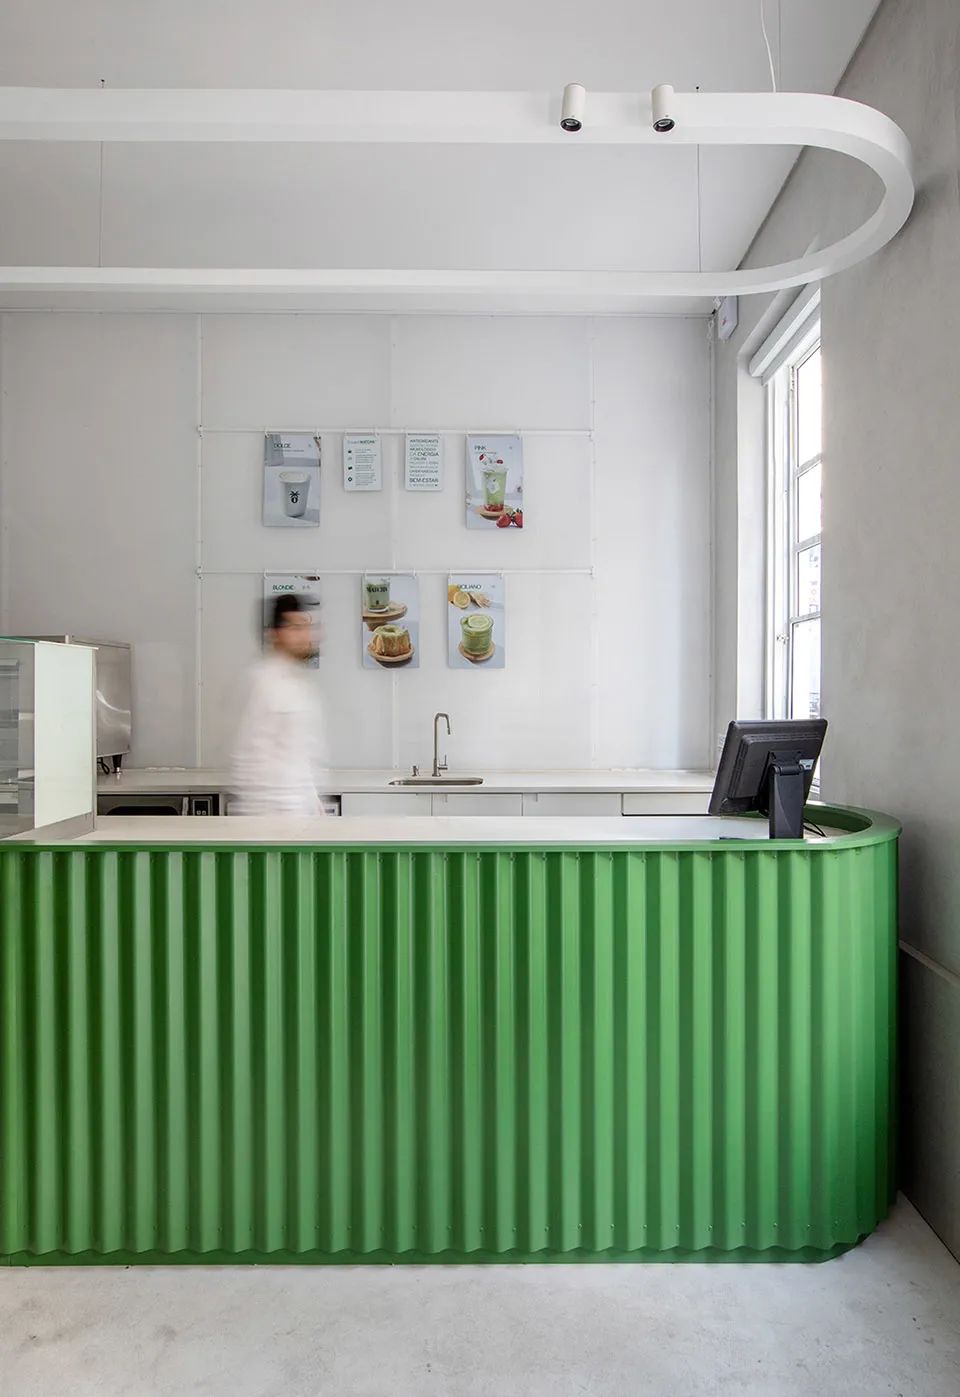 磚面包覆的服務吧台 巴西抹茶咖啡店室內設計 Brazeil matcharia Green Blood interior design／Studio Guilherme Garcia